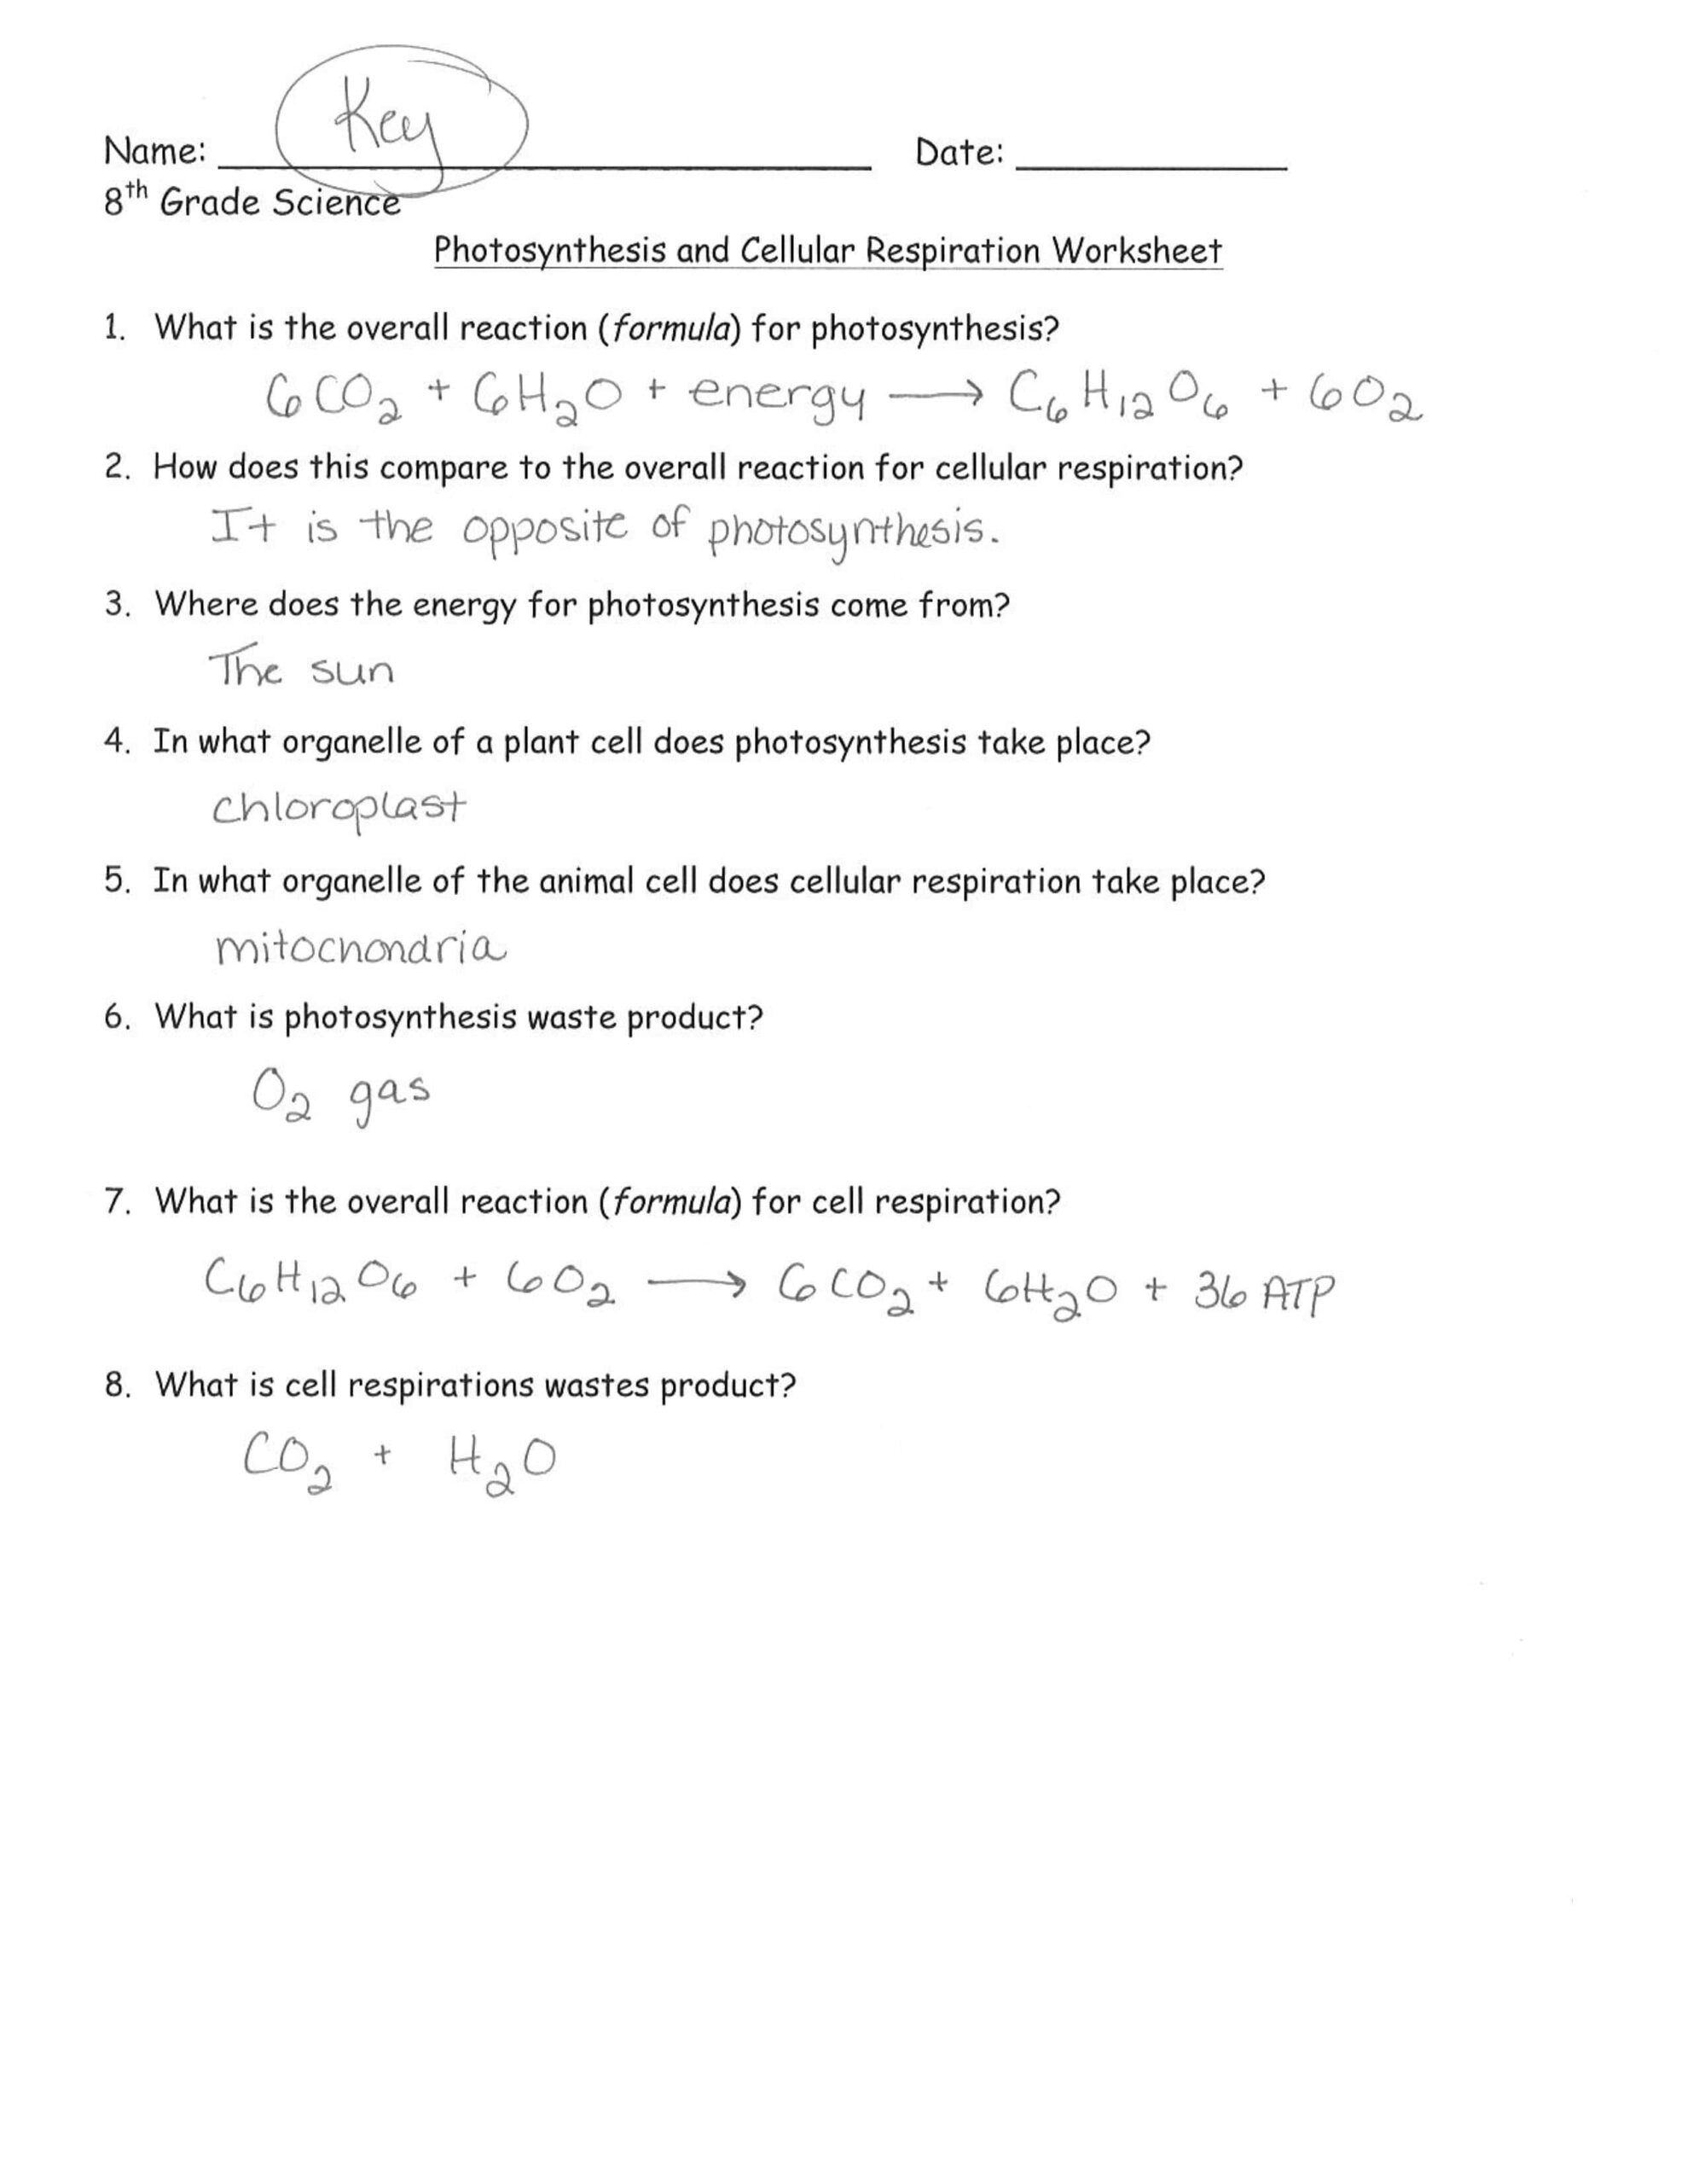 حل ورقة عمل العلوم المتكاملة الصف السادس